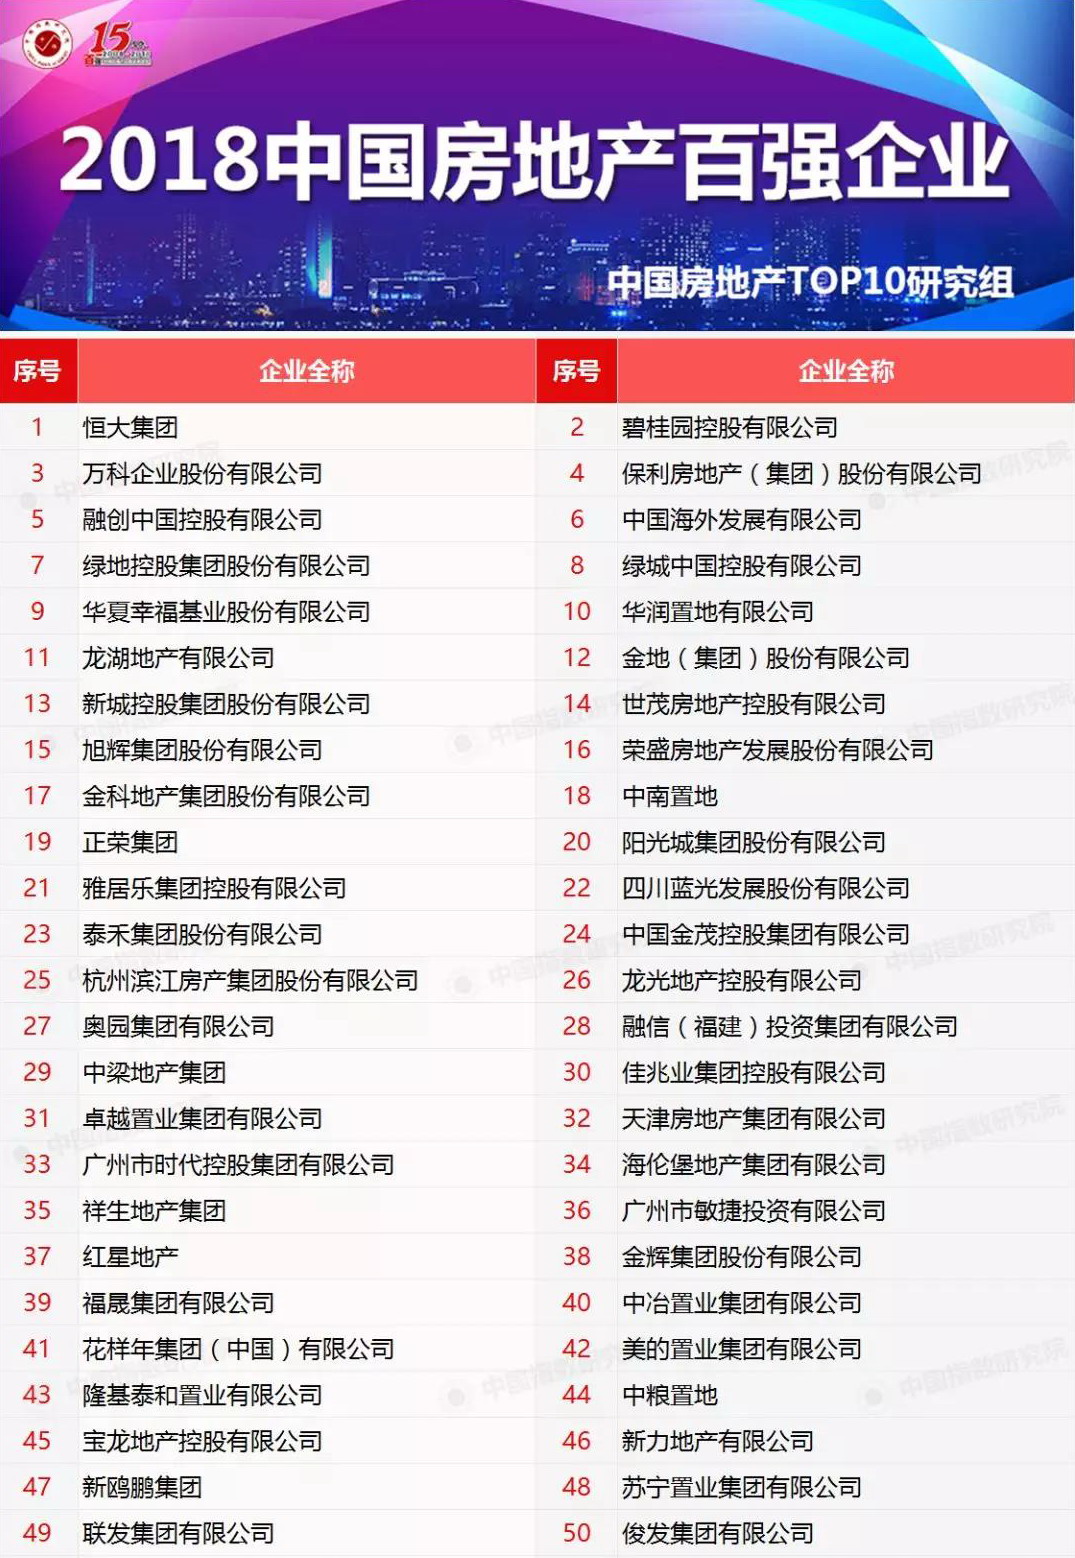 重磅发布 | 2018中国房地产百强企业名单终于揭晓!